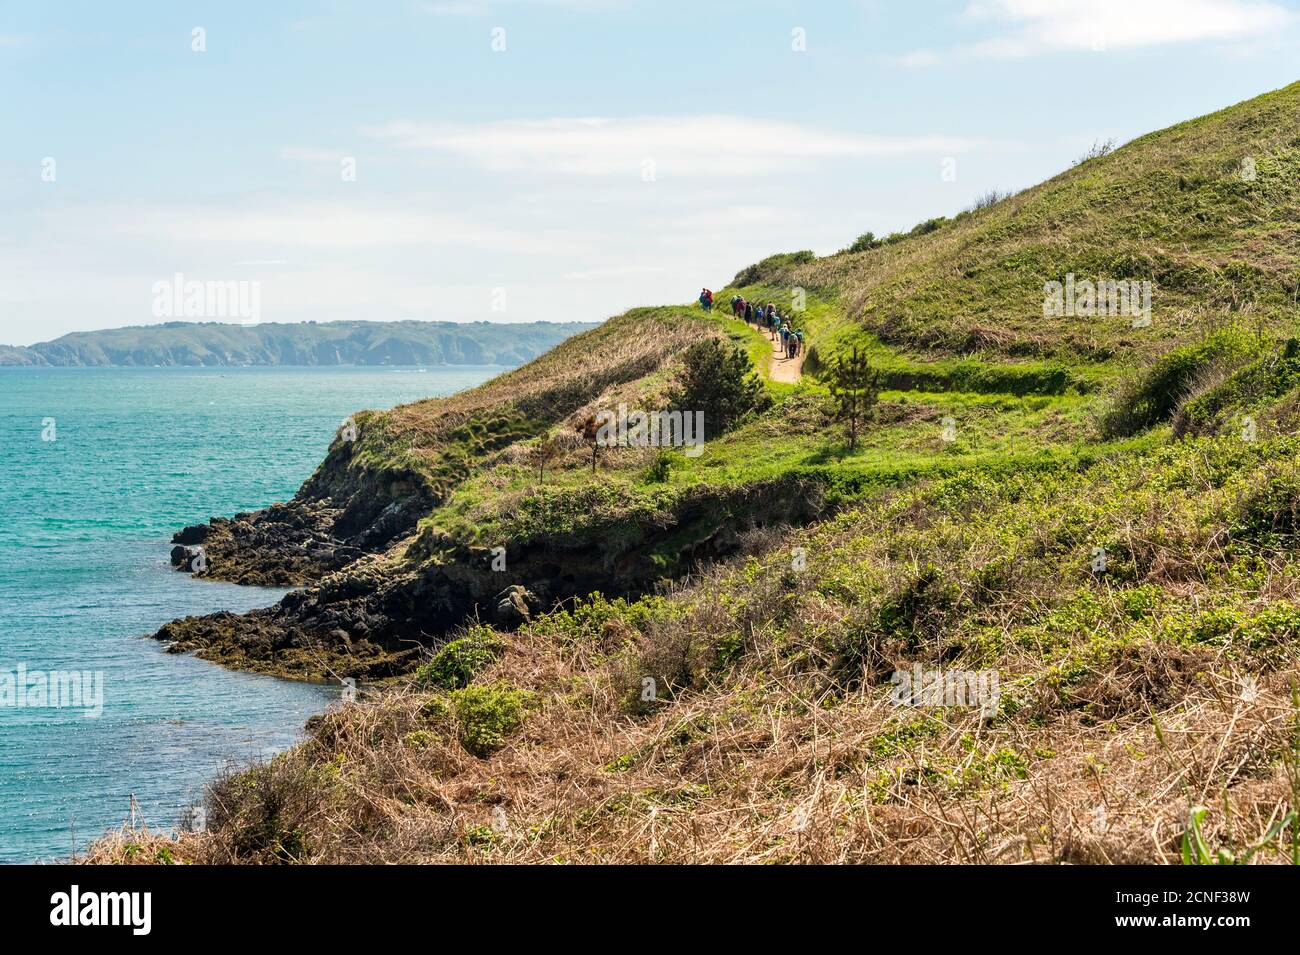 Un gruppo di escursionisti lascia Belvoir Bay, dirigendosi verso sud lungo il percorso costiero intorno a Herm Island, Guernsey, Isole del canale, Regno Unito. Foto Stock